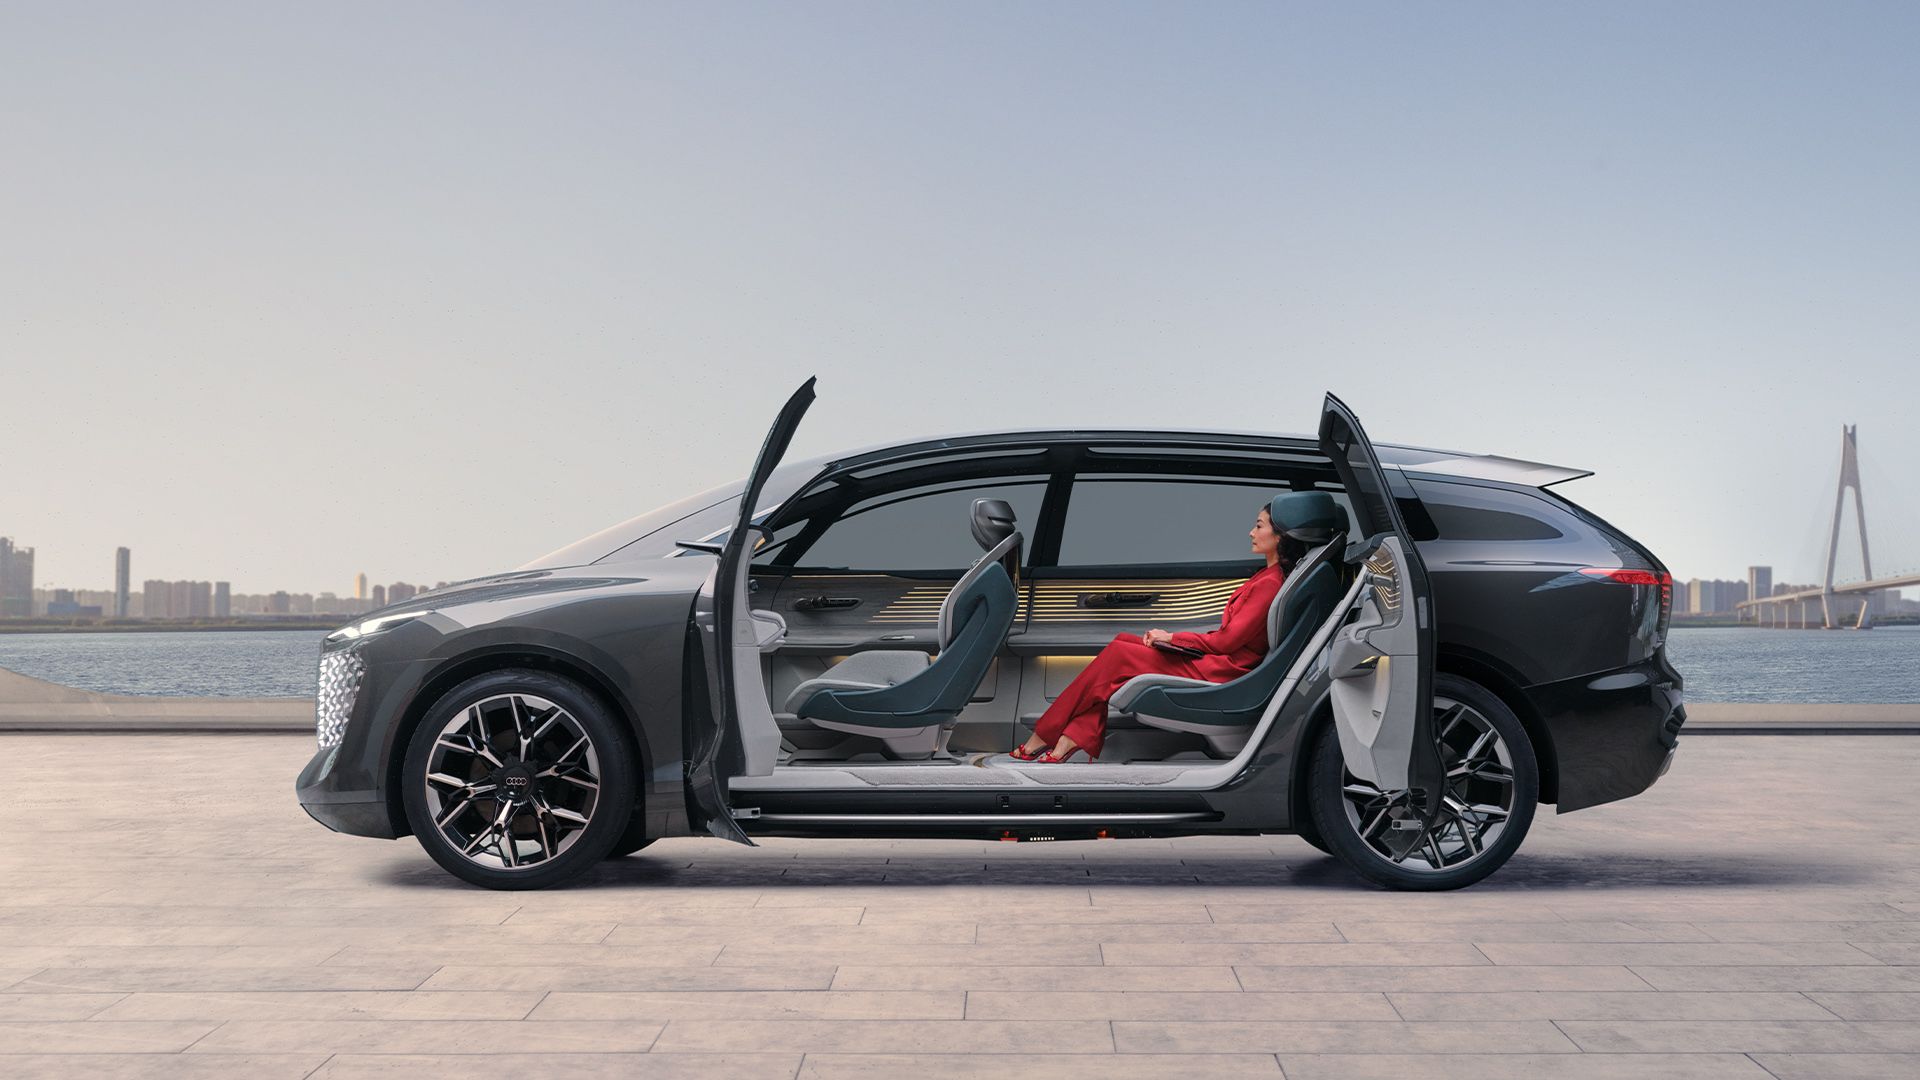 Les portes ouvertes révèlent l'intérieur de l'Audi urbansphere concept.